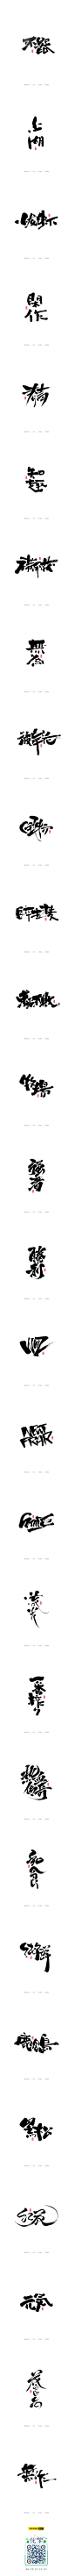 九月手写书法字体-字体传奇网-中国首个字体品牌设计师交流网